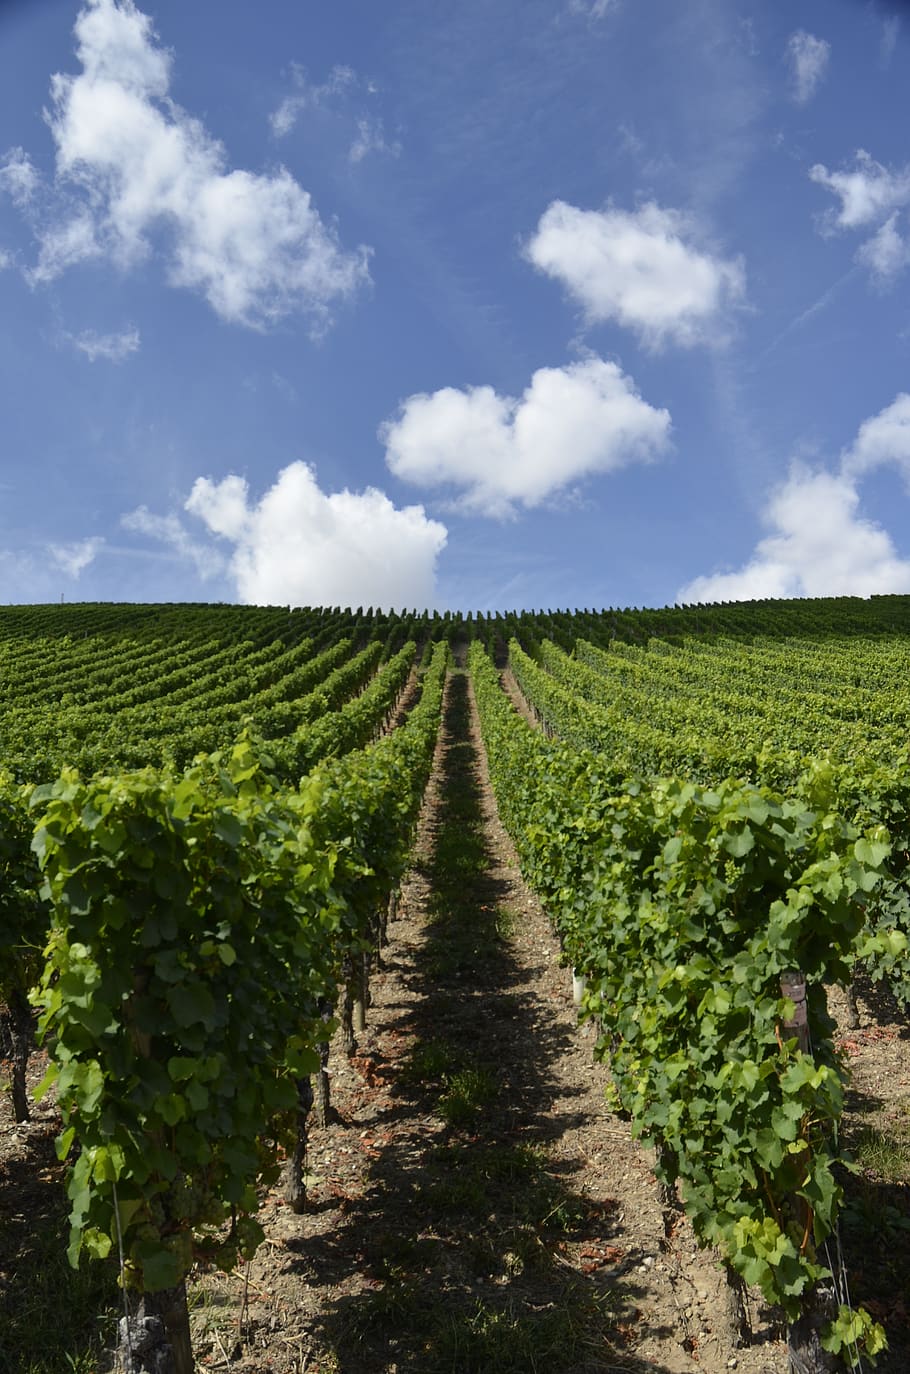 escher village, mainfranken, swiss francs, vineyard, wine, sky, winegrowing, rebstock, grapes, winemaker